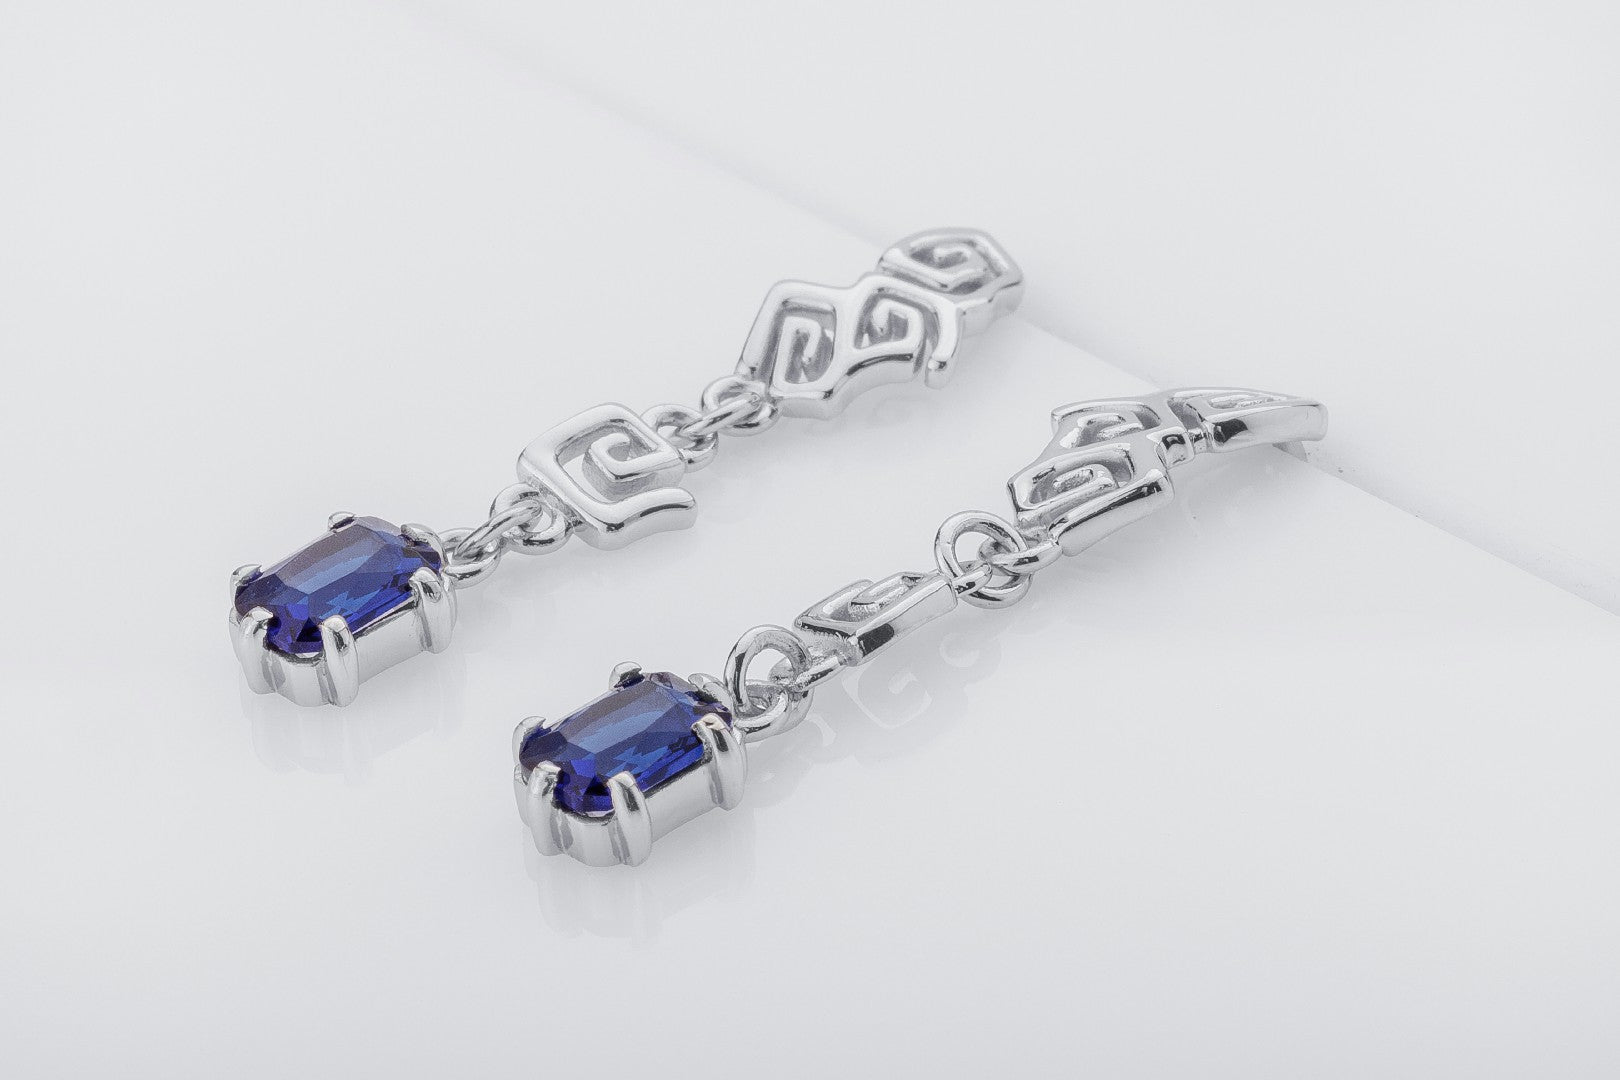 Sea Foam Earrings with Blue Gems, 925 silver